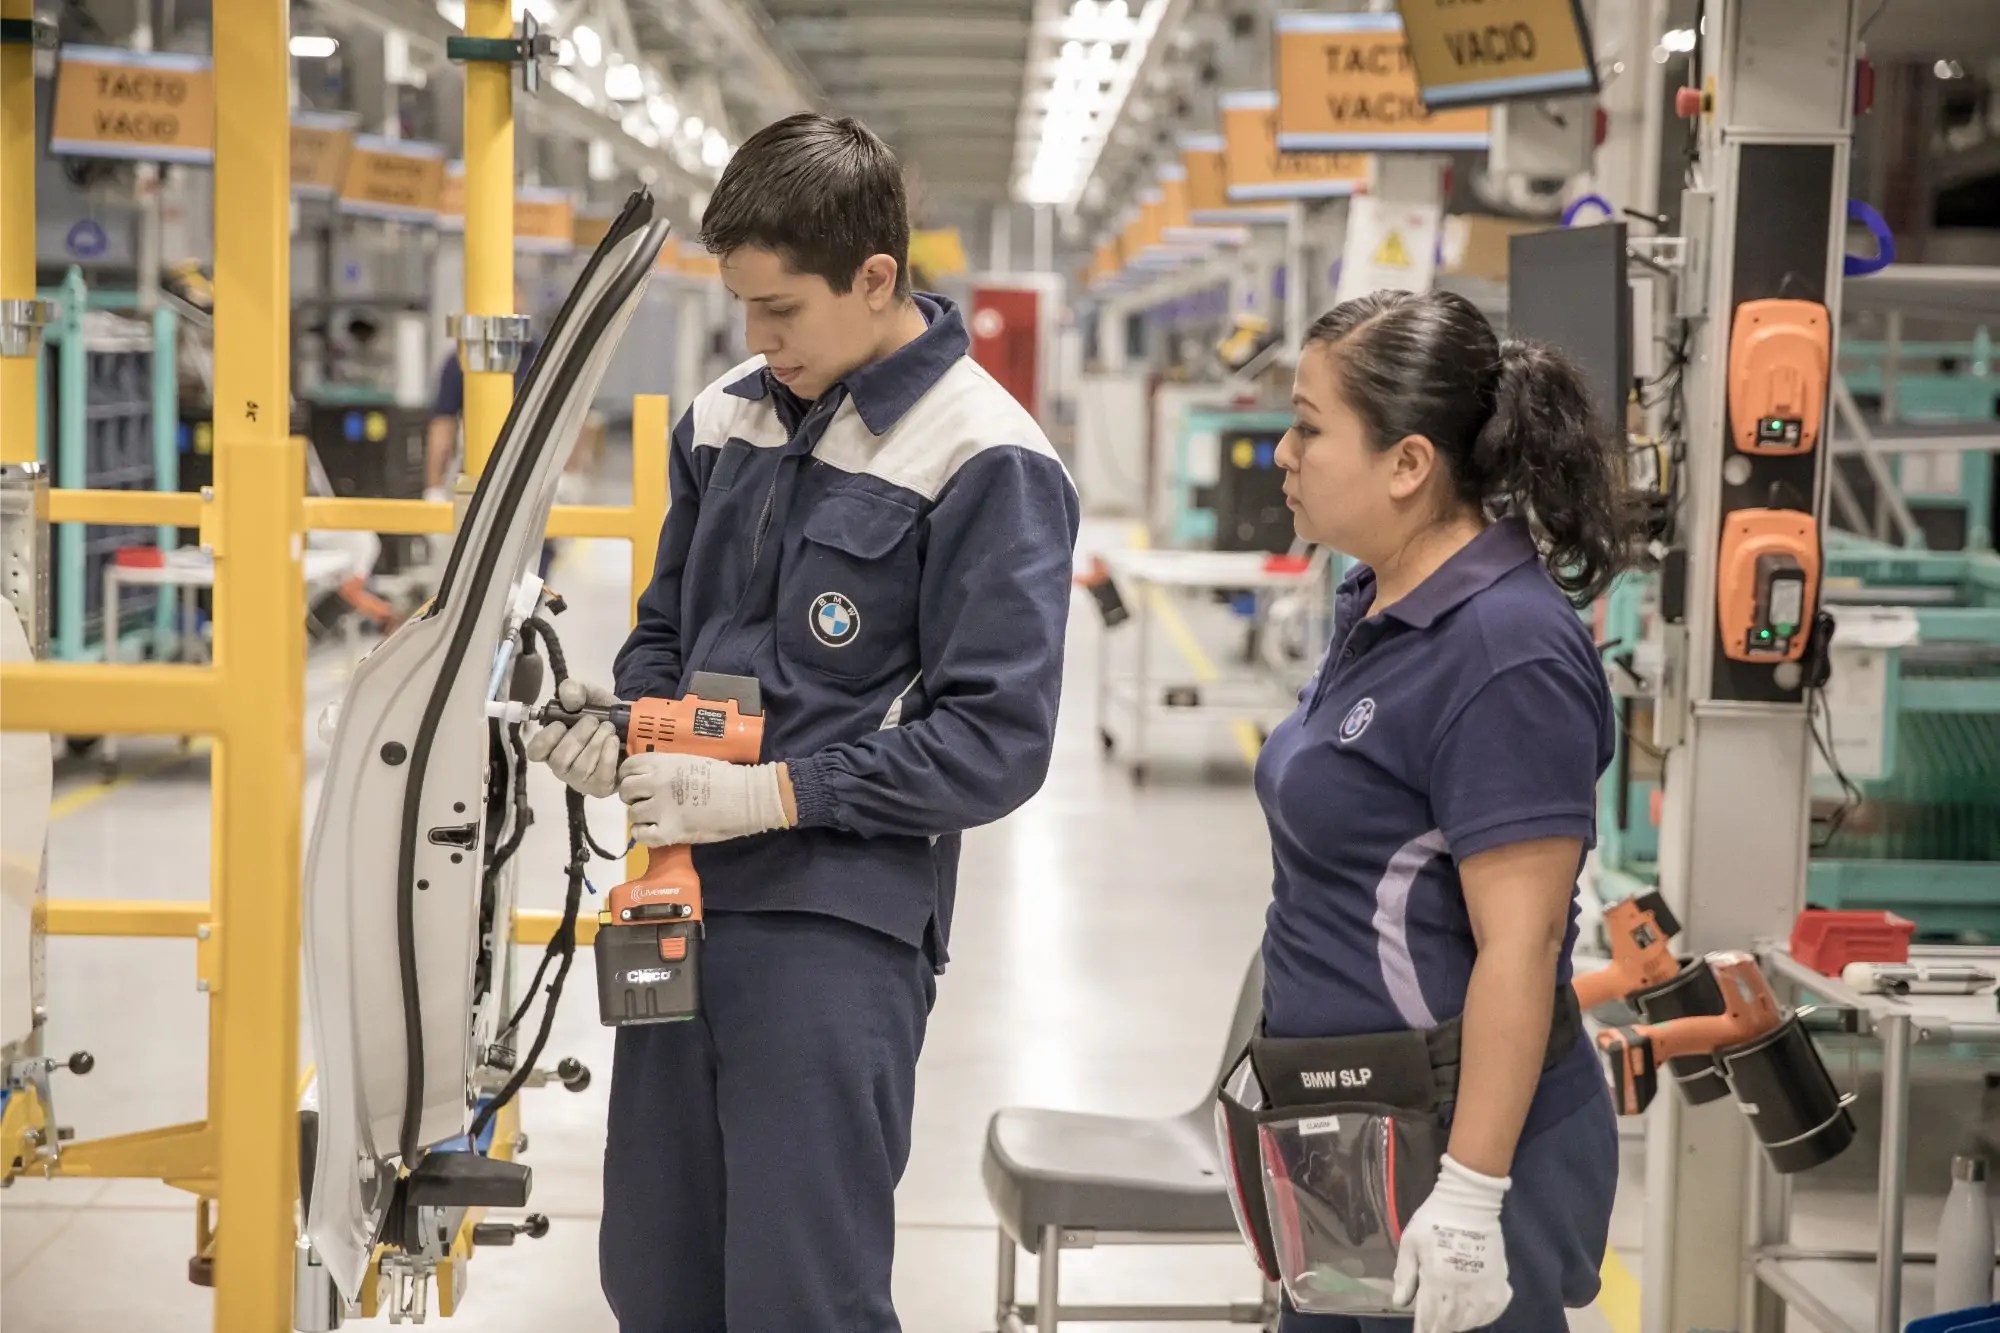 مجموعة BMW تفتتح مصنعها في المكسيك